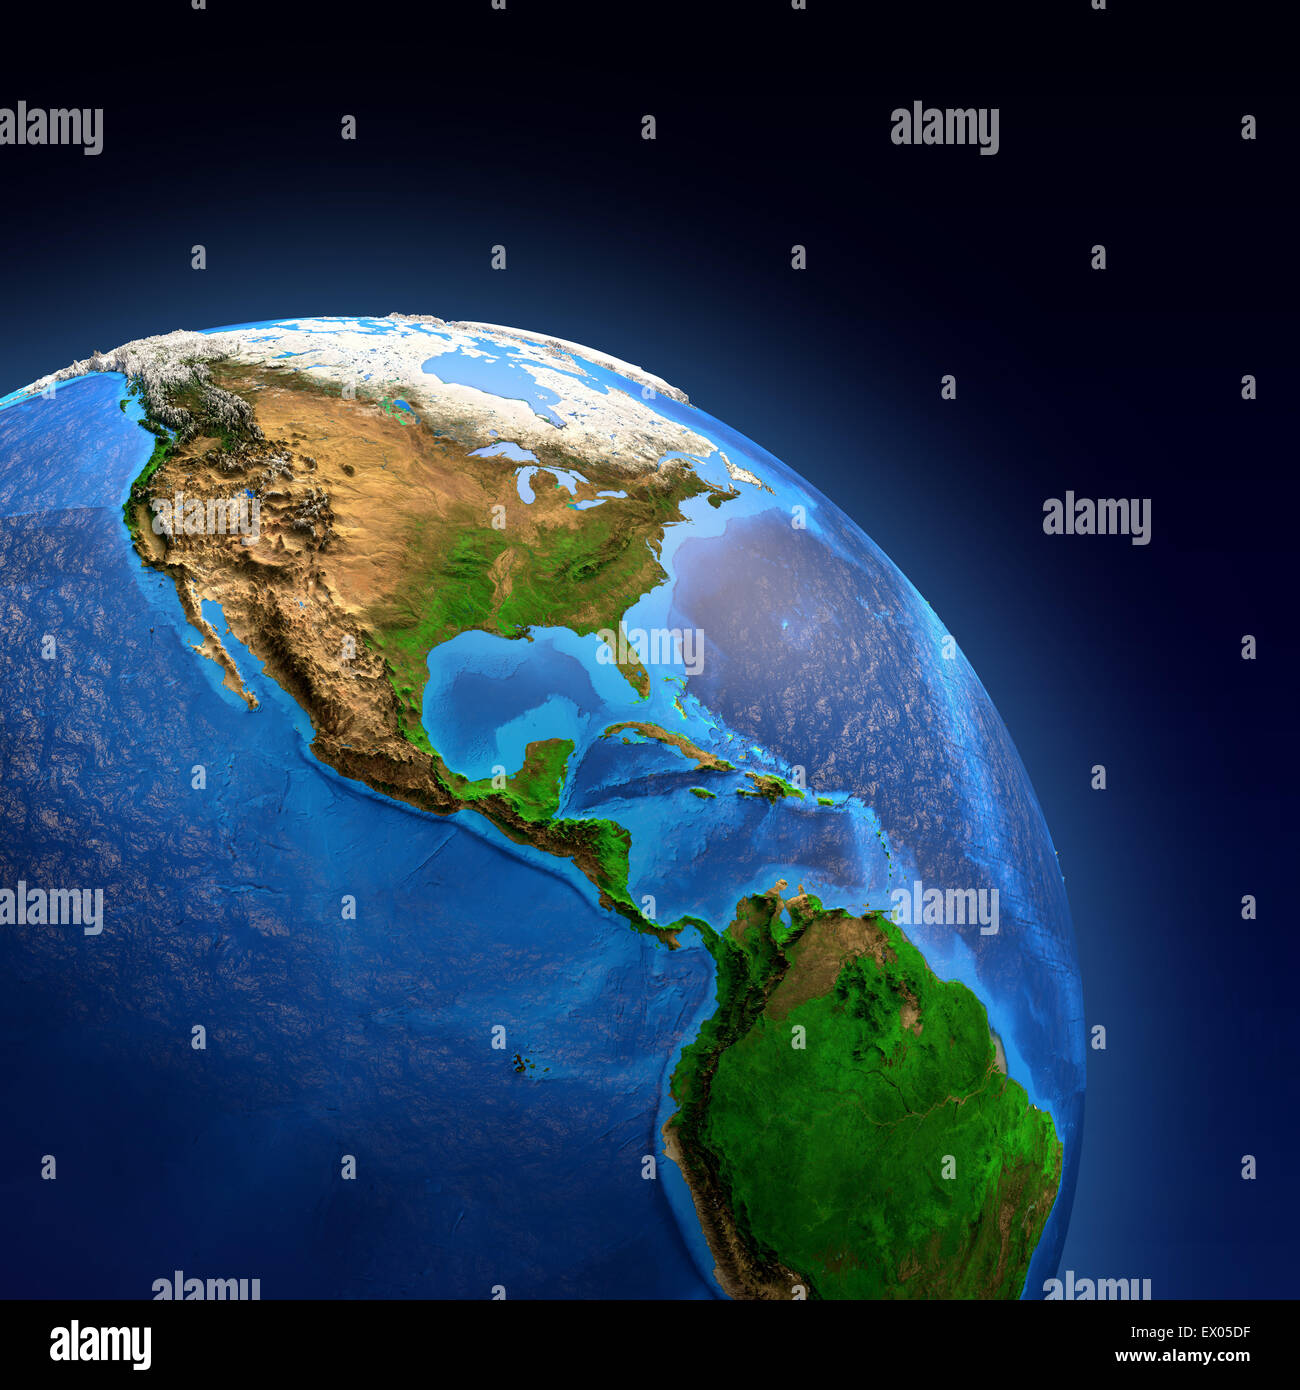 Image détaillée de la Terre et de son relief, vue sur le continent américain. Éléments de cette image fournie par la NASA Banque D'Images